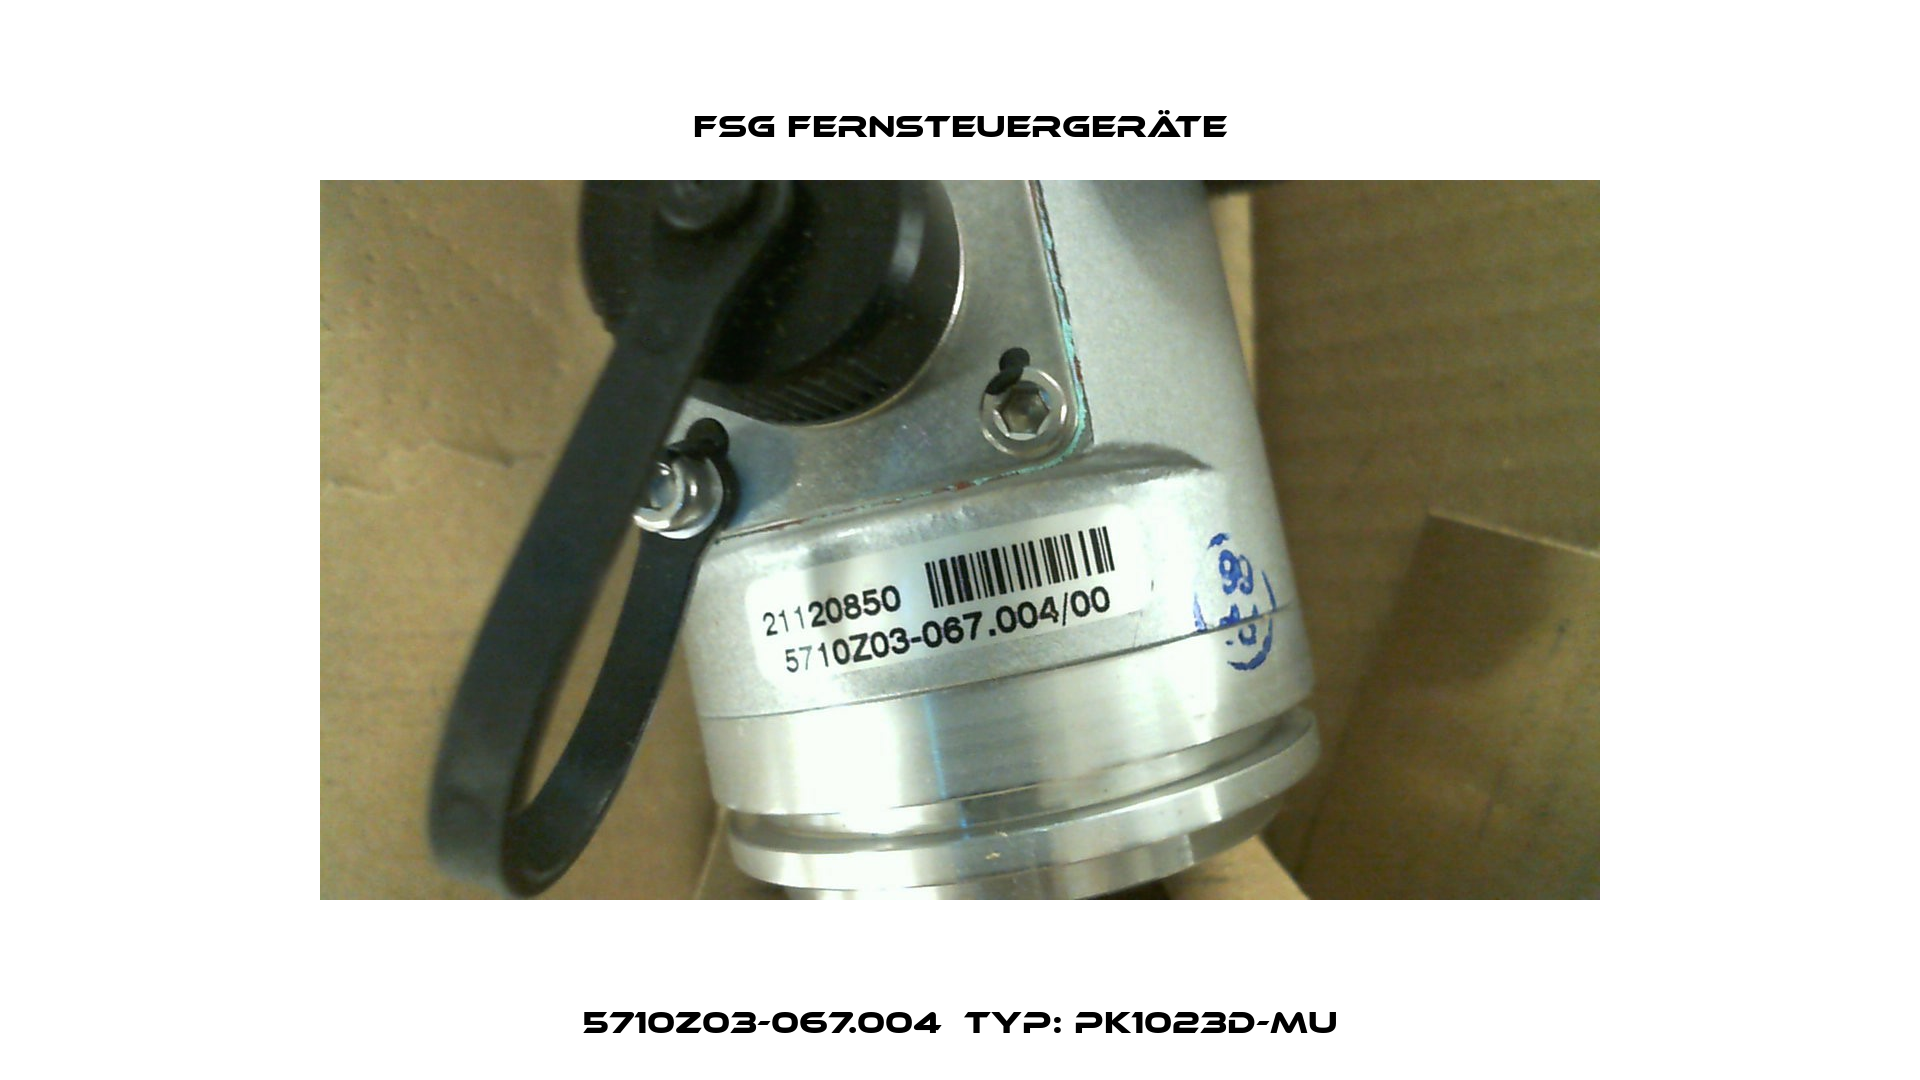 5710Z03-067.004  Typ: PK1023d-MU FSG Fernsteuergeräte